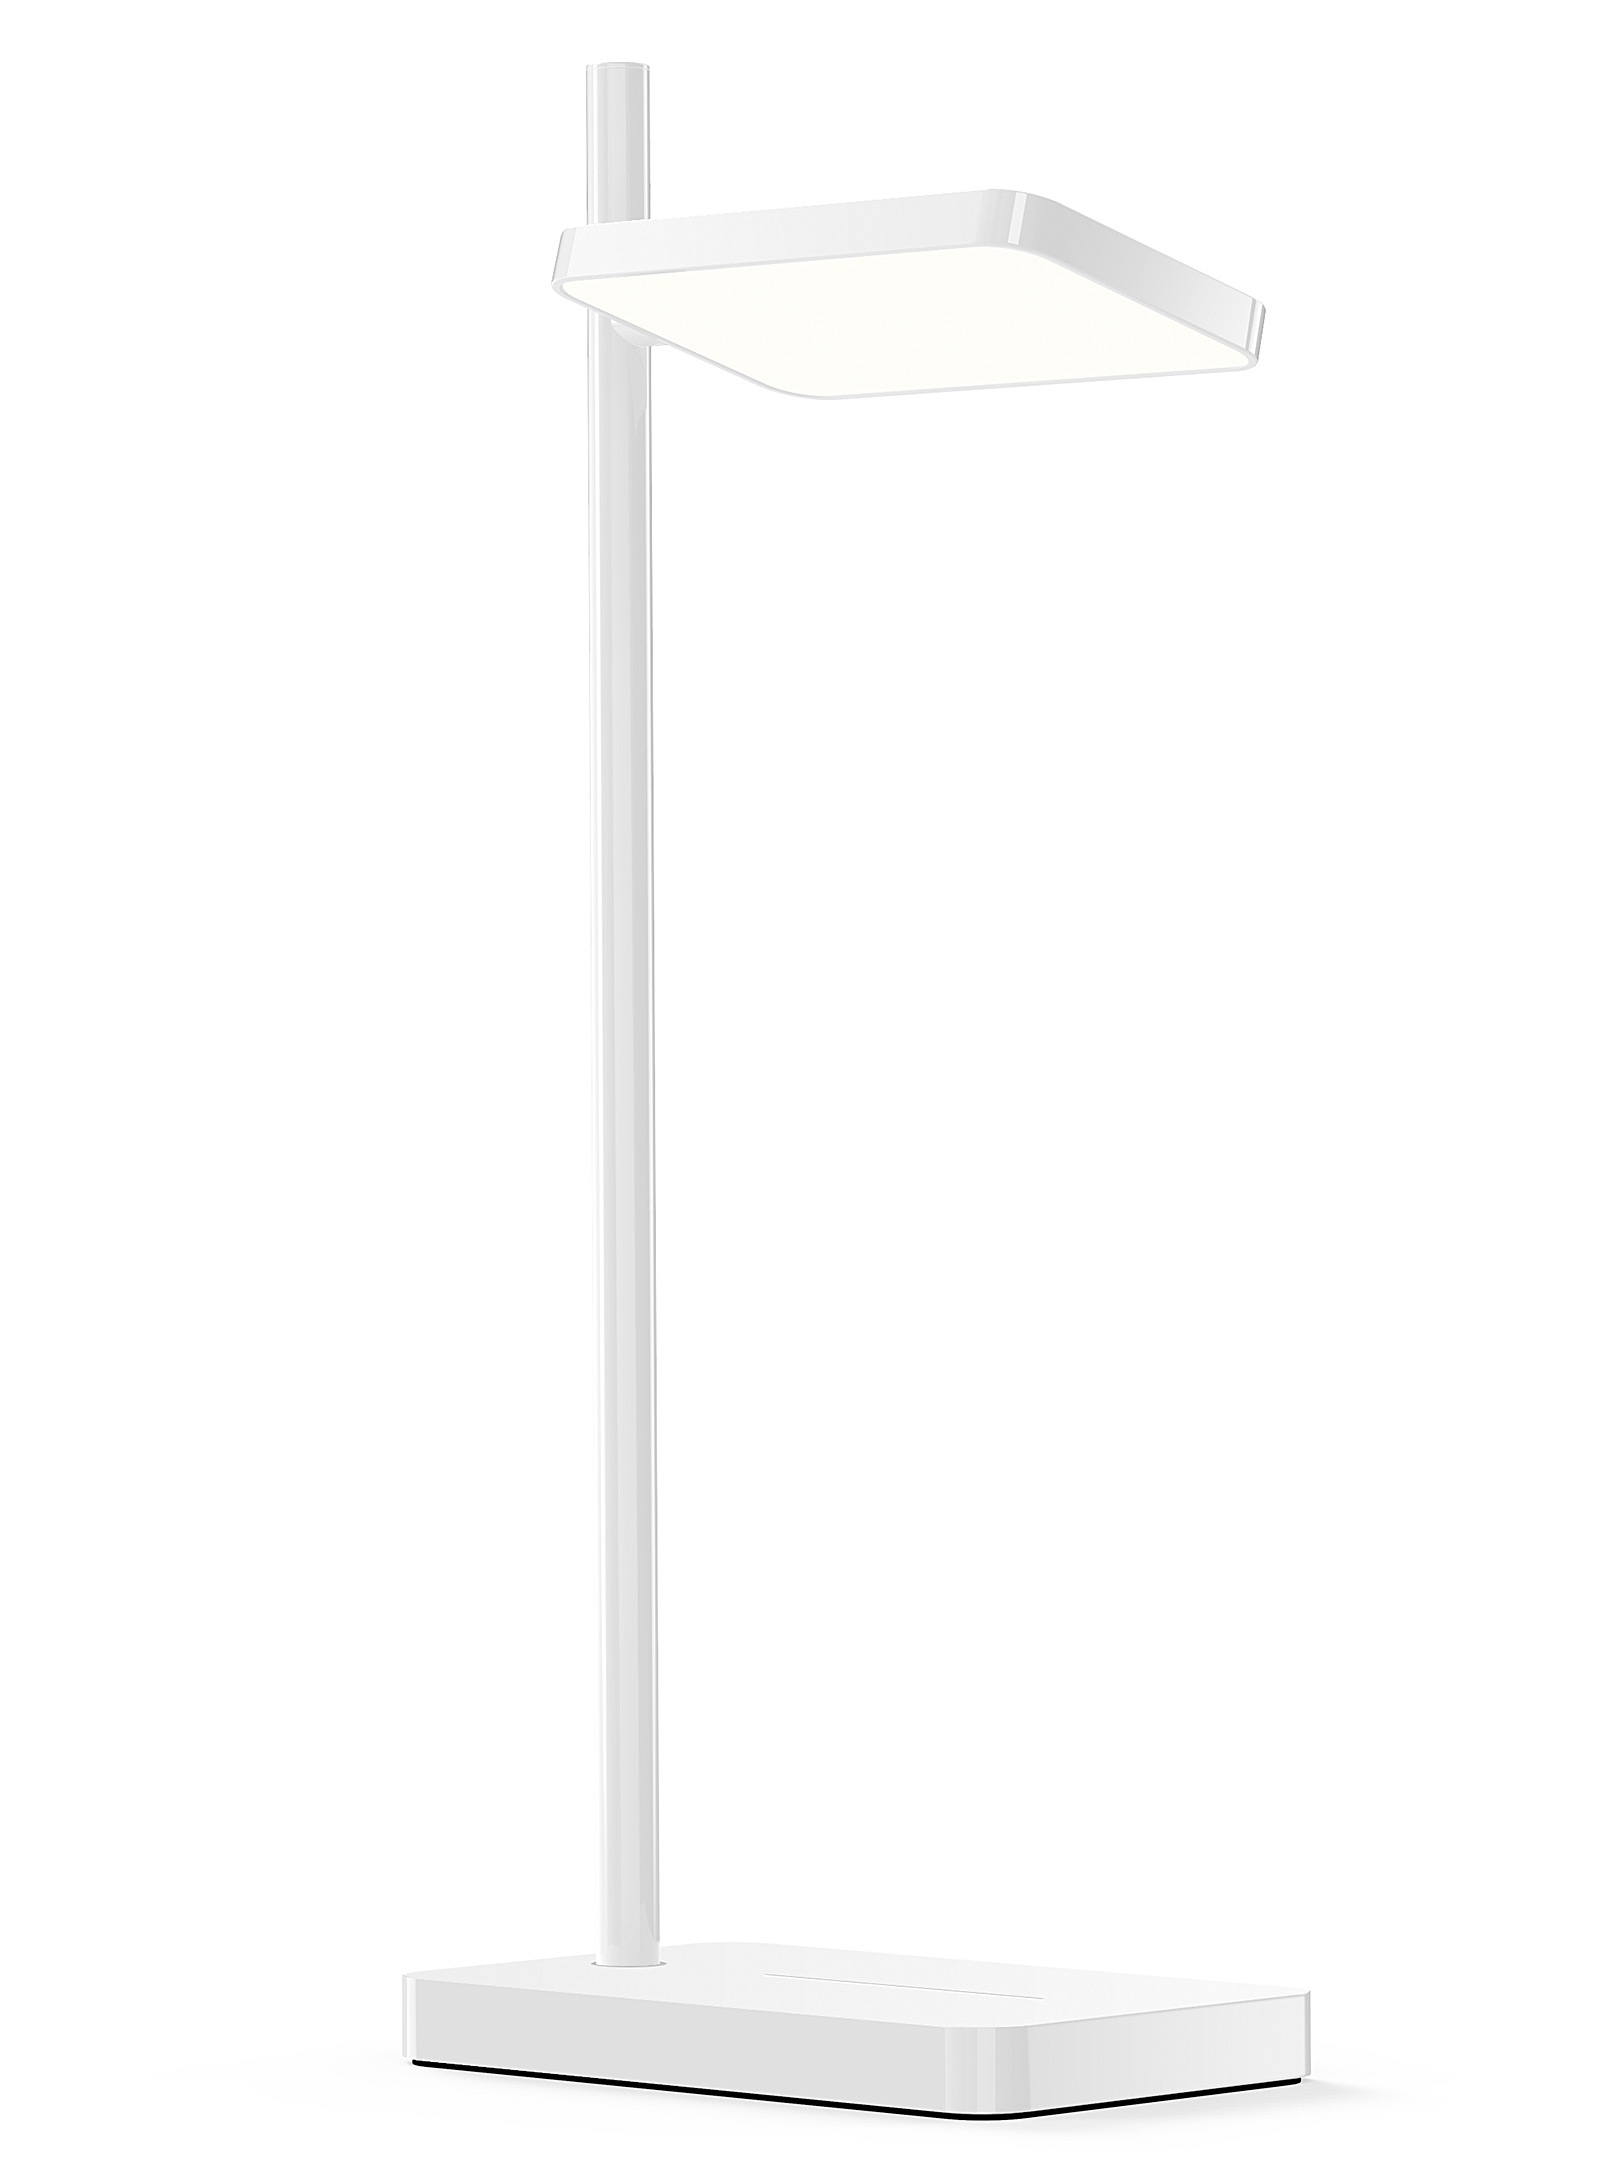 Pablo Designs Talia Swivel Table Lamp In White